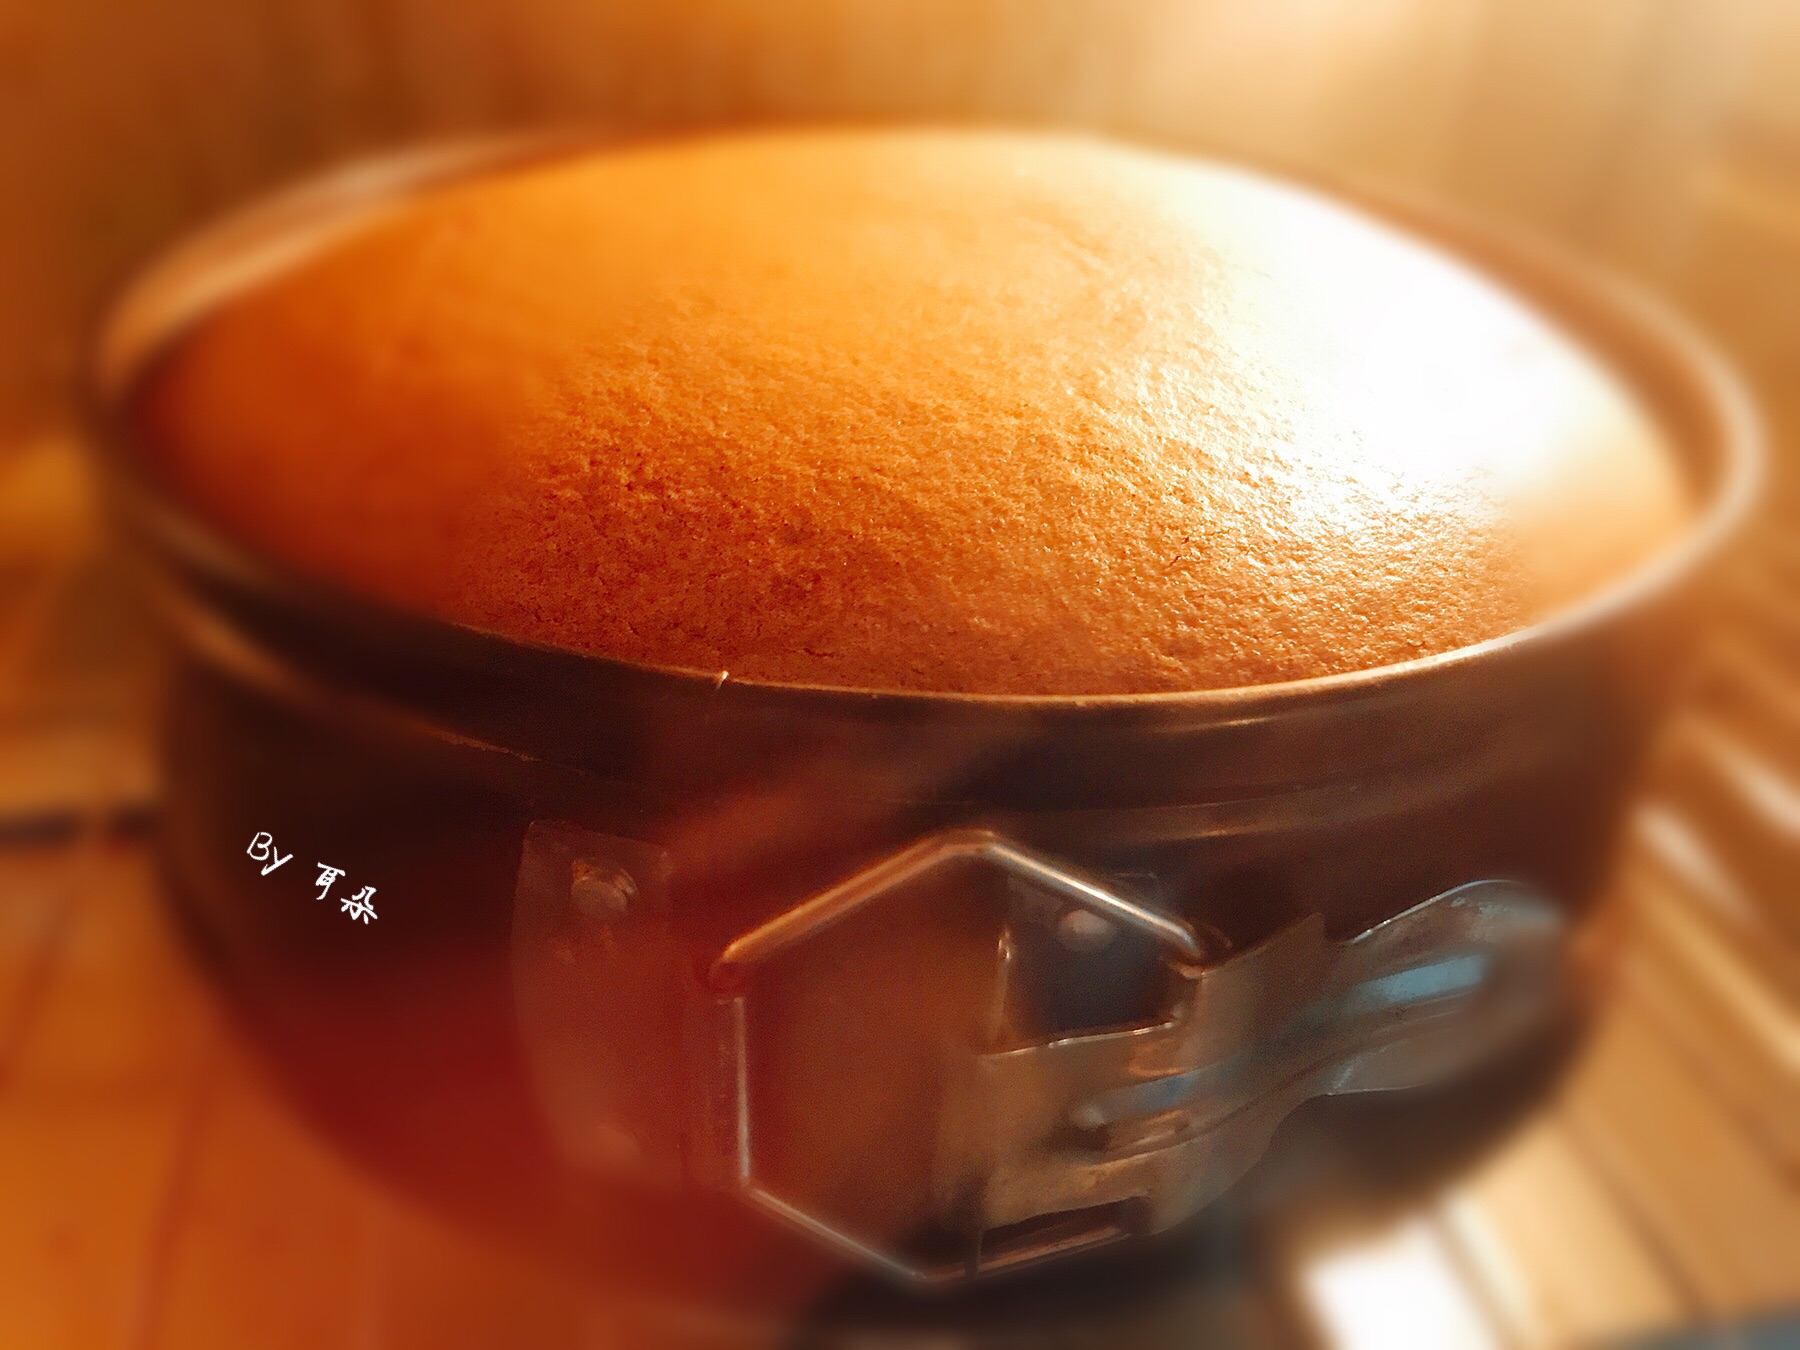 自制水果蛋糕造型,纯水果蛋糕,用水果搭的蛋糕造型_大山谷图库